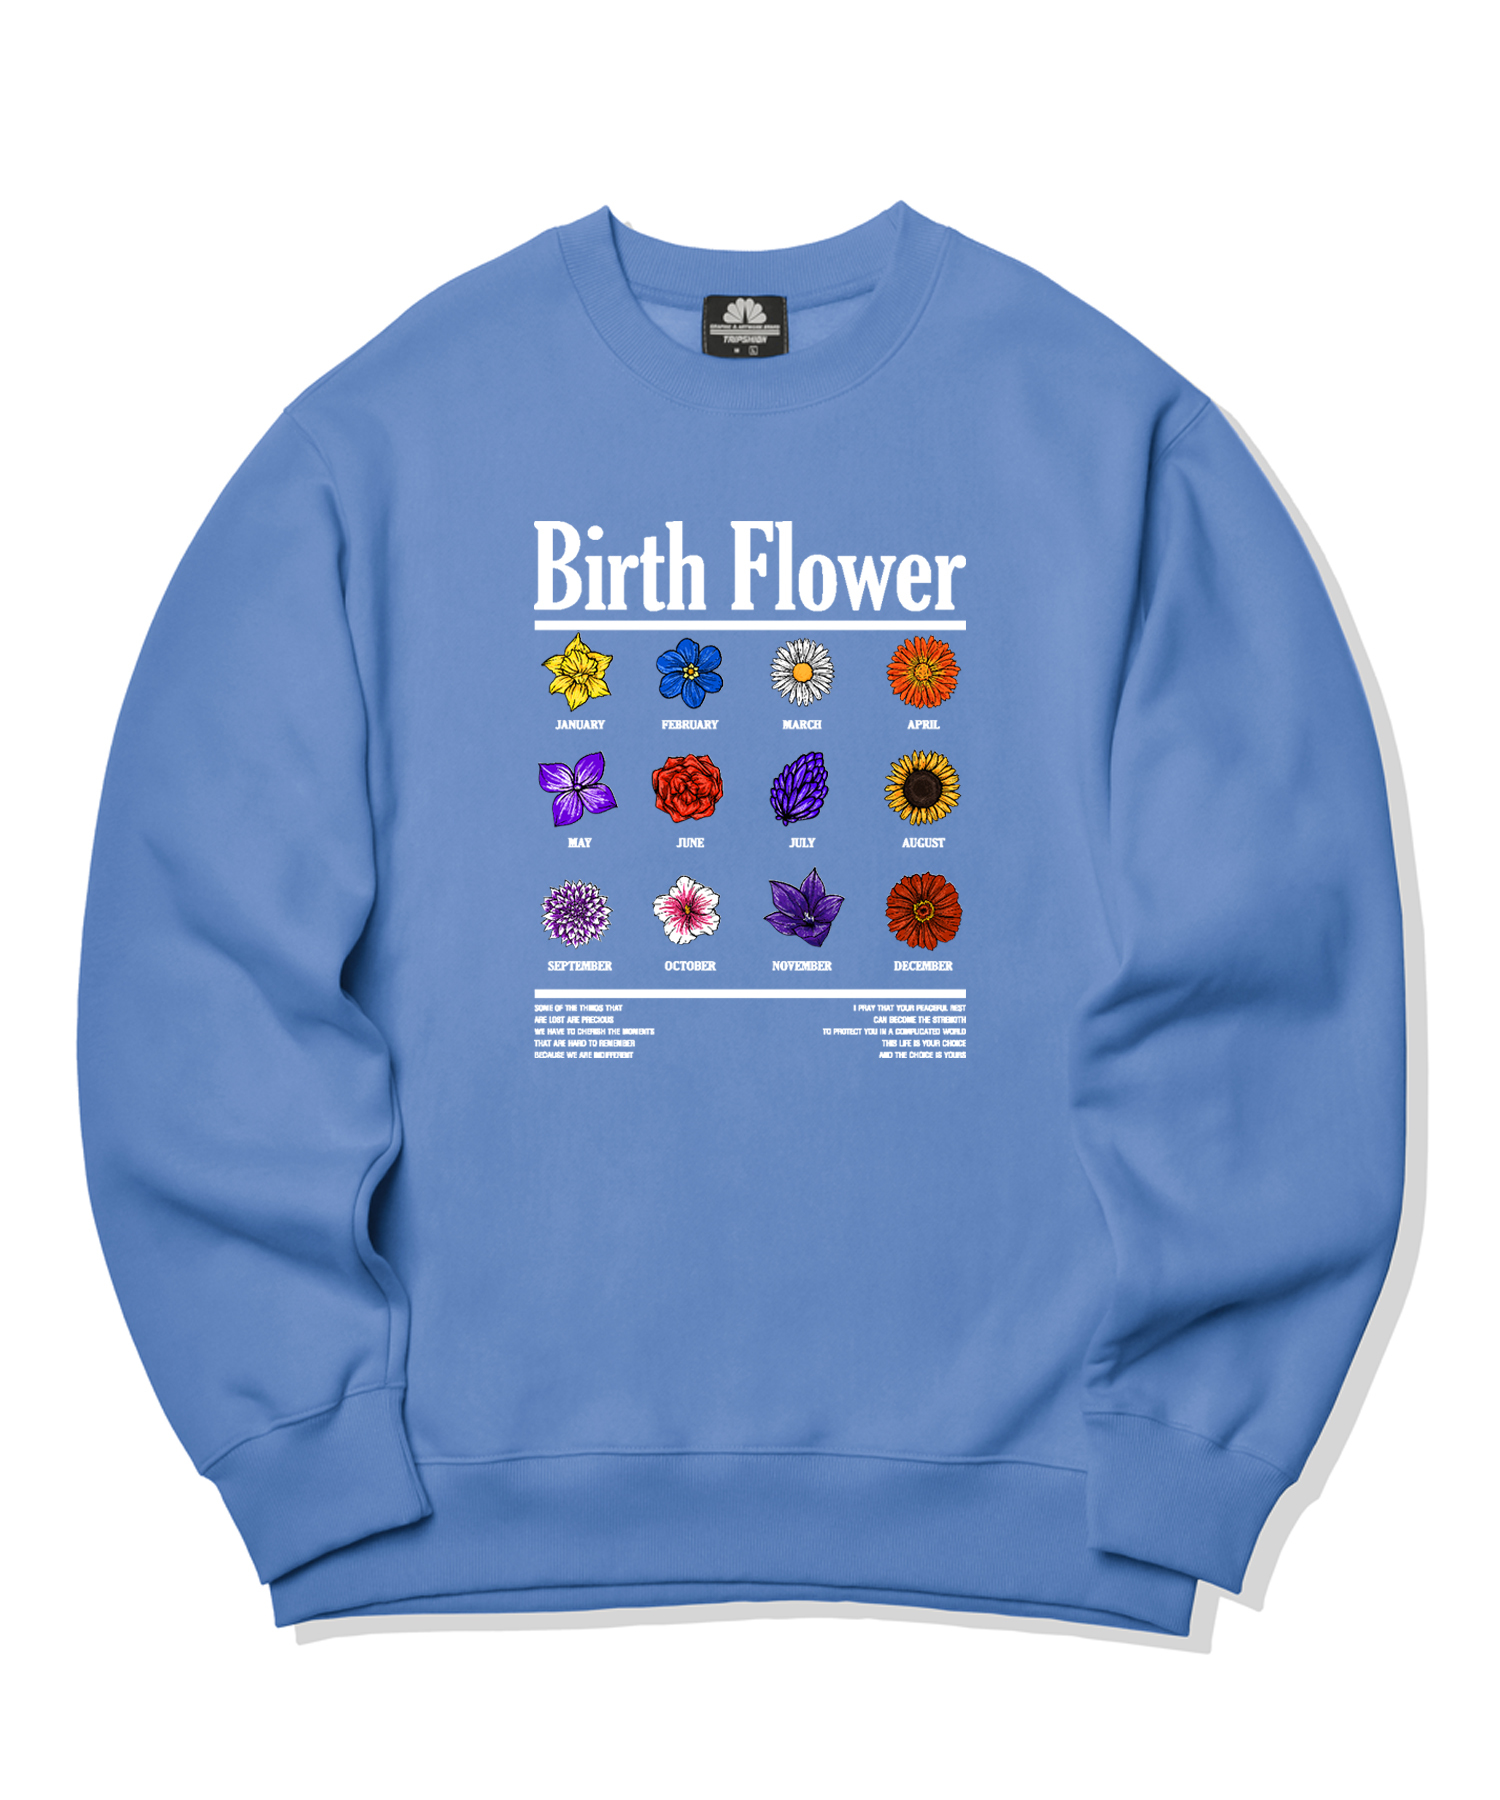 BIRTH FLOWER GRAPHIC CREWNECK - BLUE